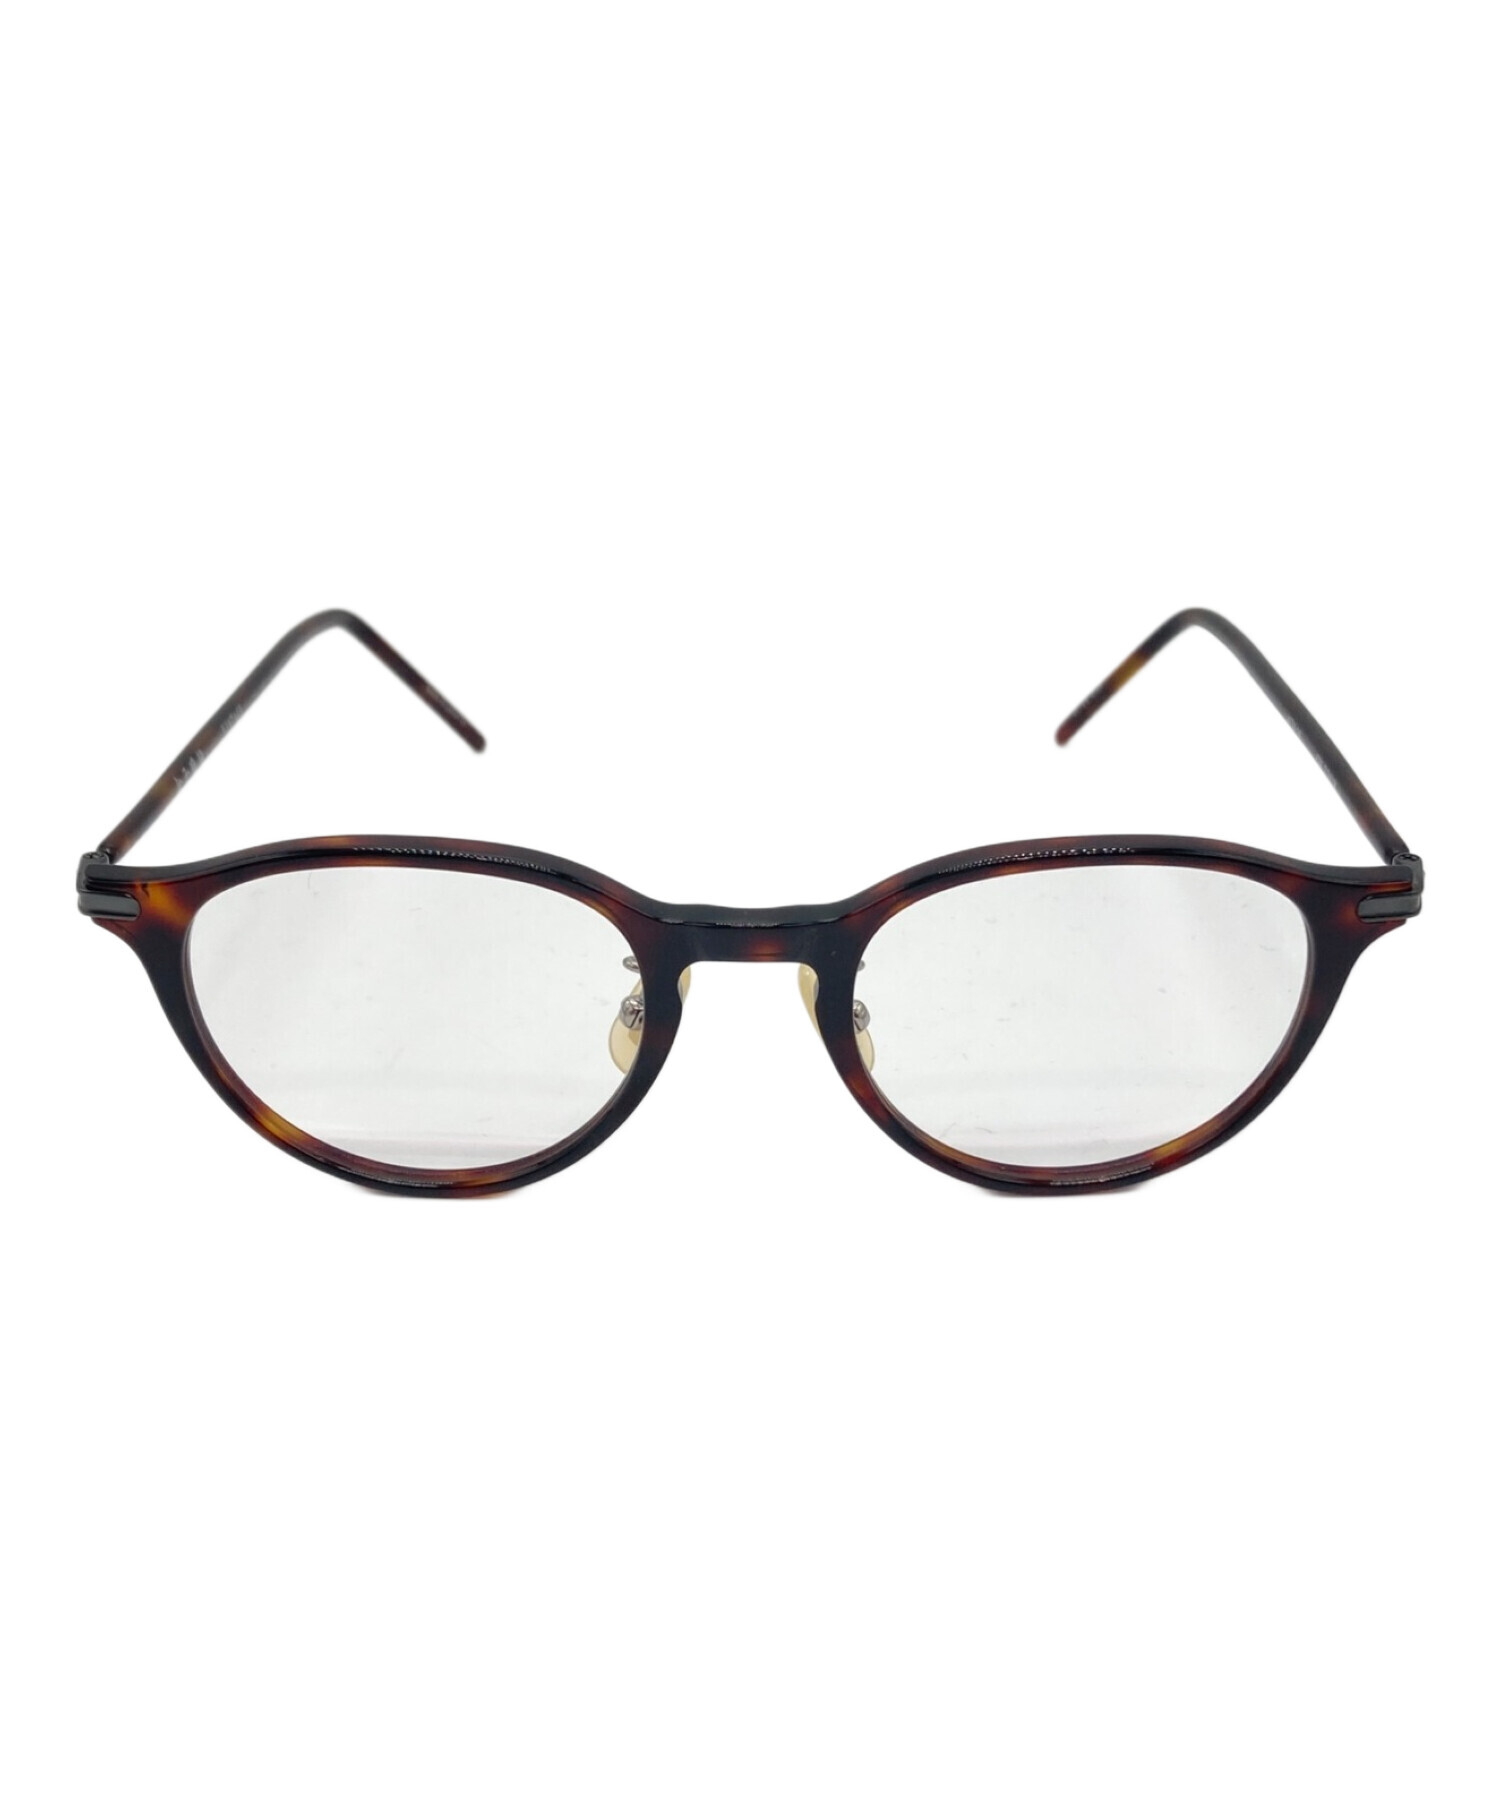 金子眼鏡 (カネコメガネ) 伊達眼鏡 サイズ:48□21-145